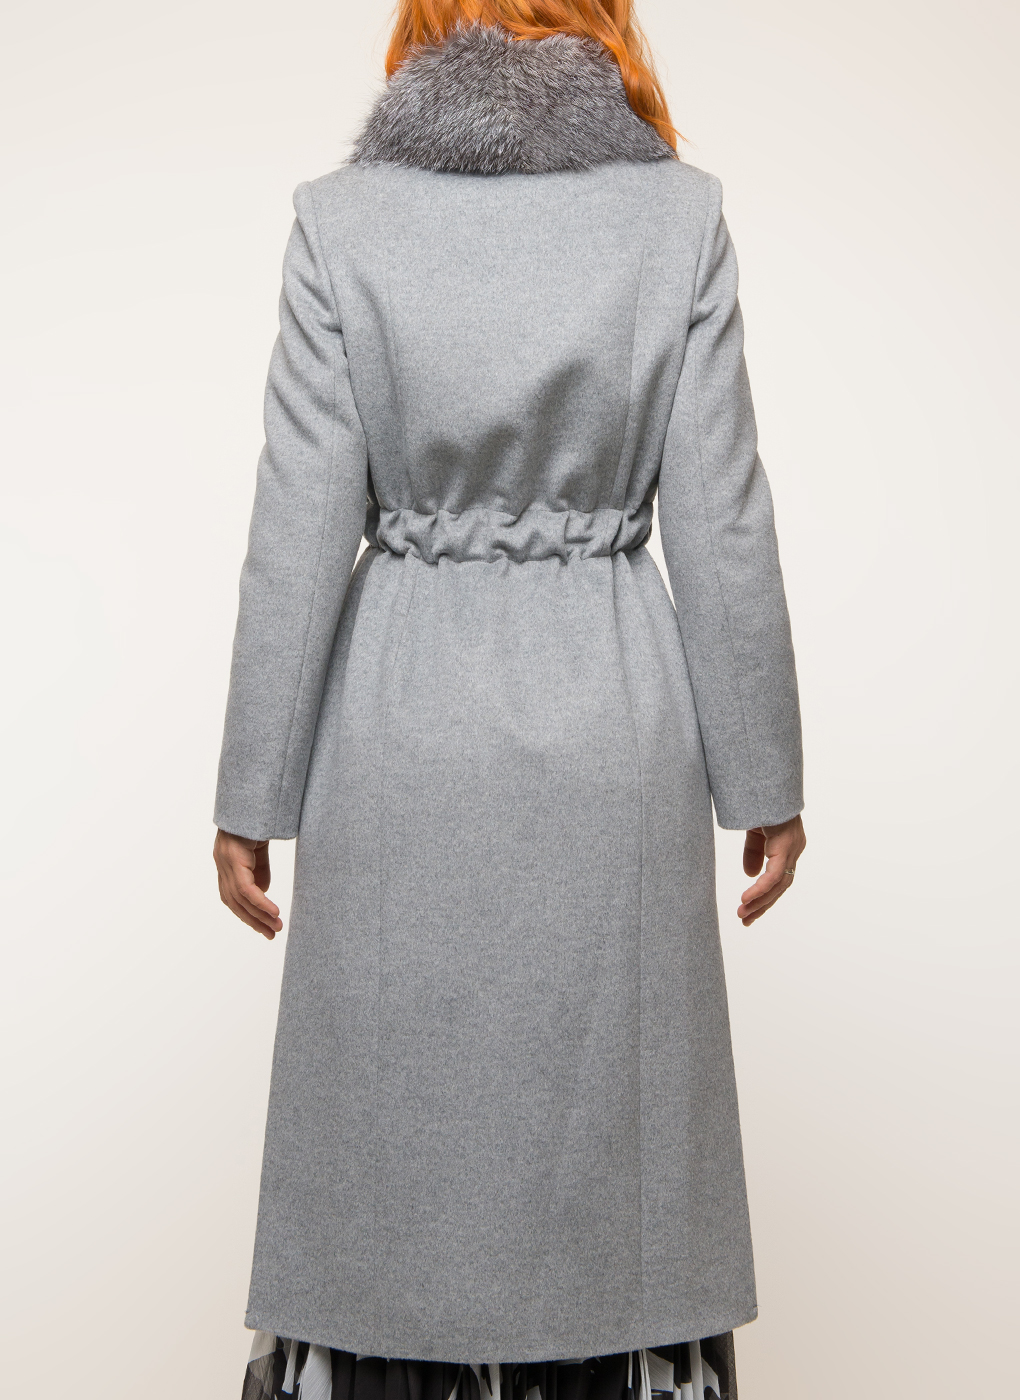 Пальто женское Белла коллекшн м 20-25